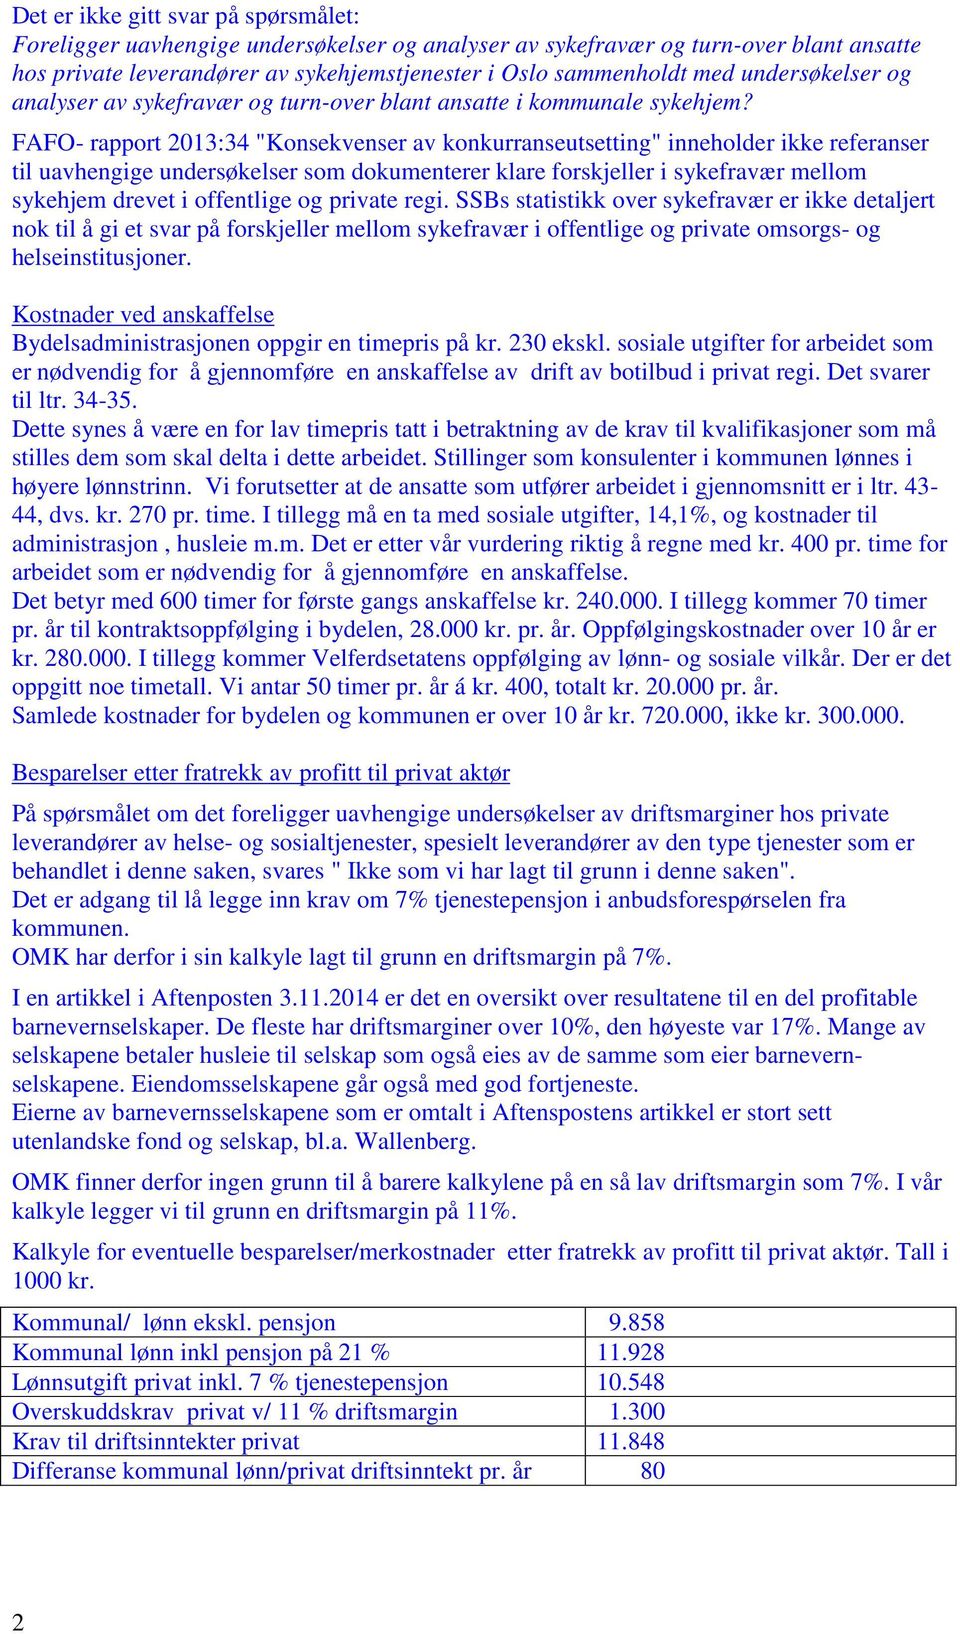 FAFO- appot 2013:34 "Konsekvense av konkuanseutsetting" inneholde ikke efeanse til uavhengige undesøkelse som dokumentee klae foskjelle i sykefavæ mellom sykehjem devet i offentlige og pivate egi.